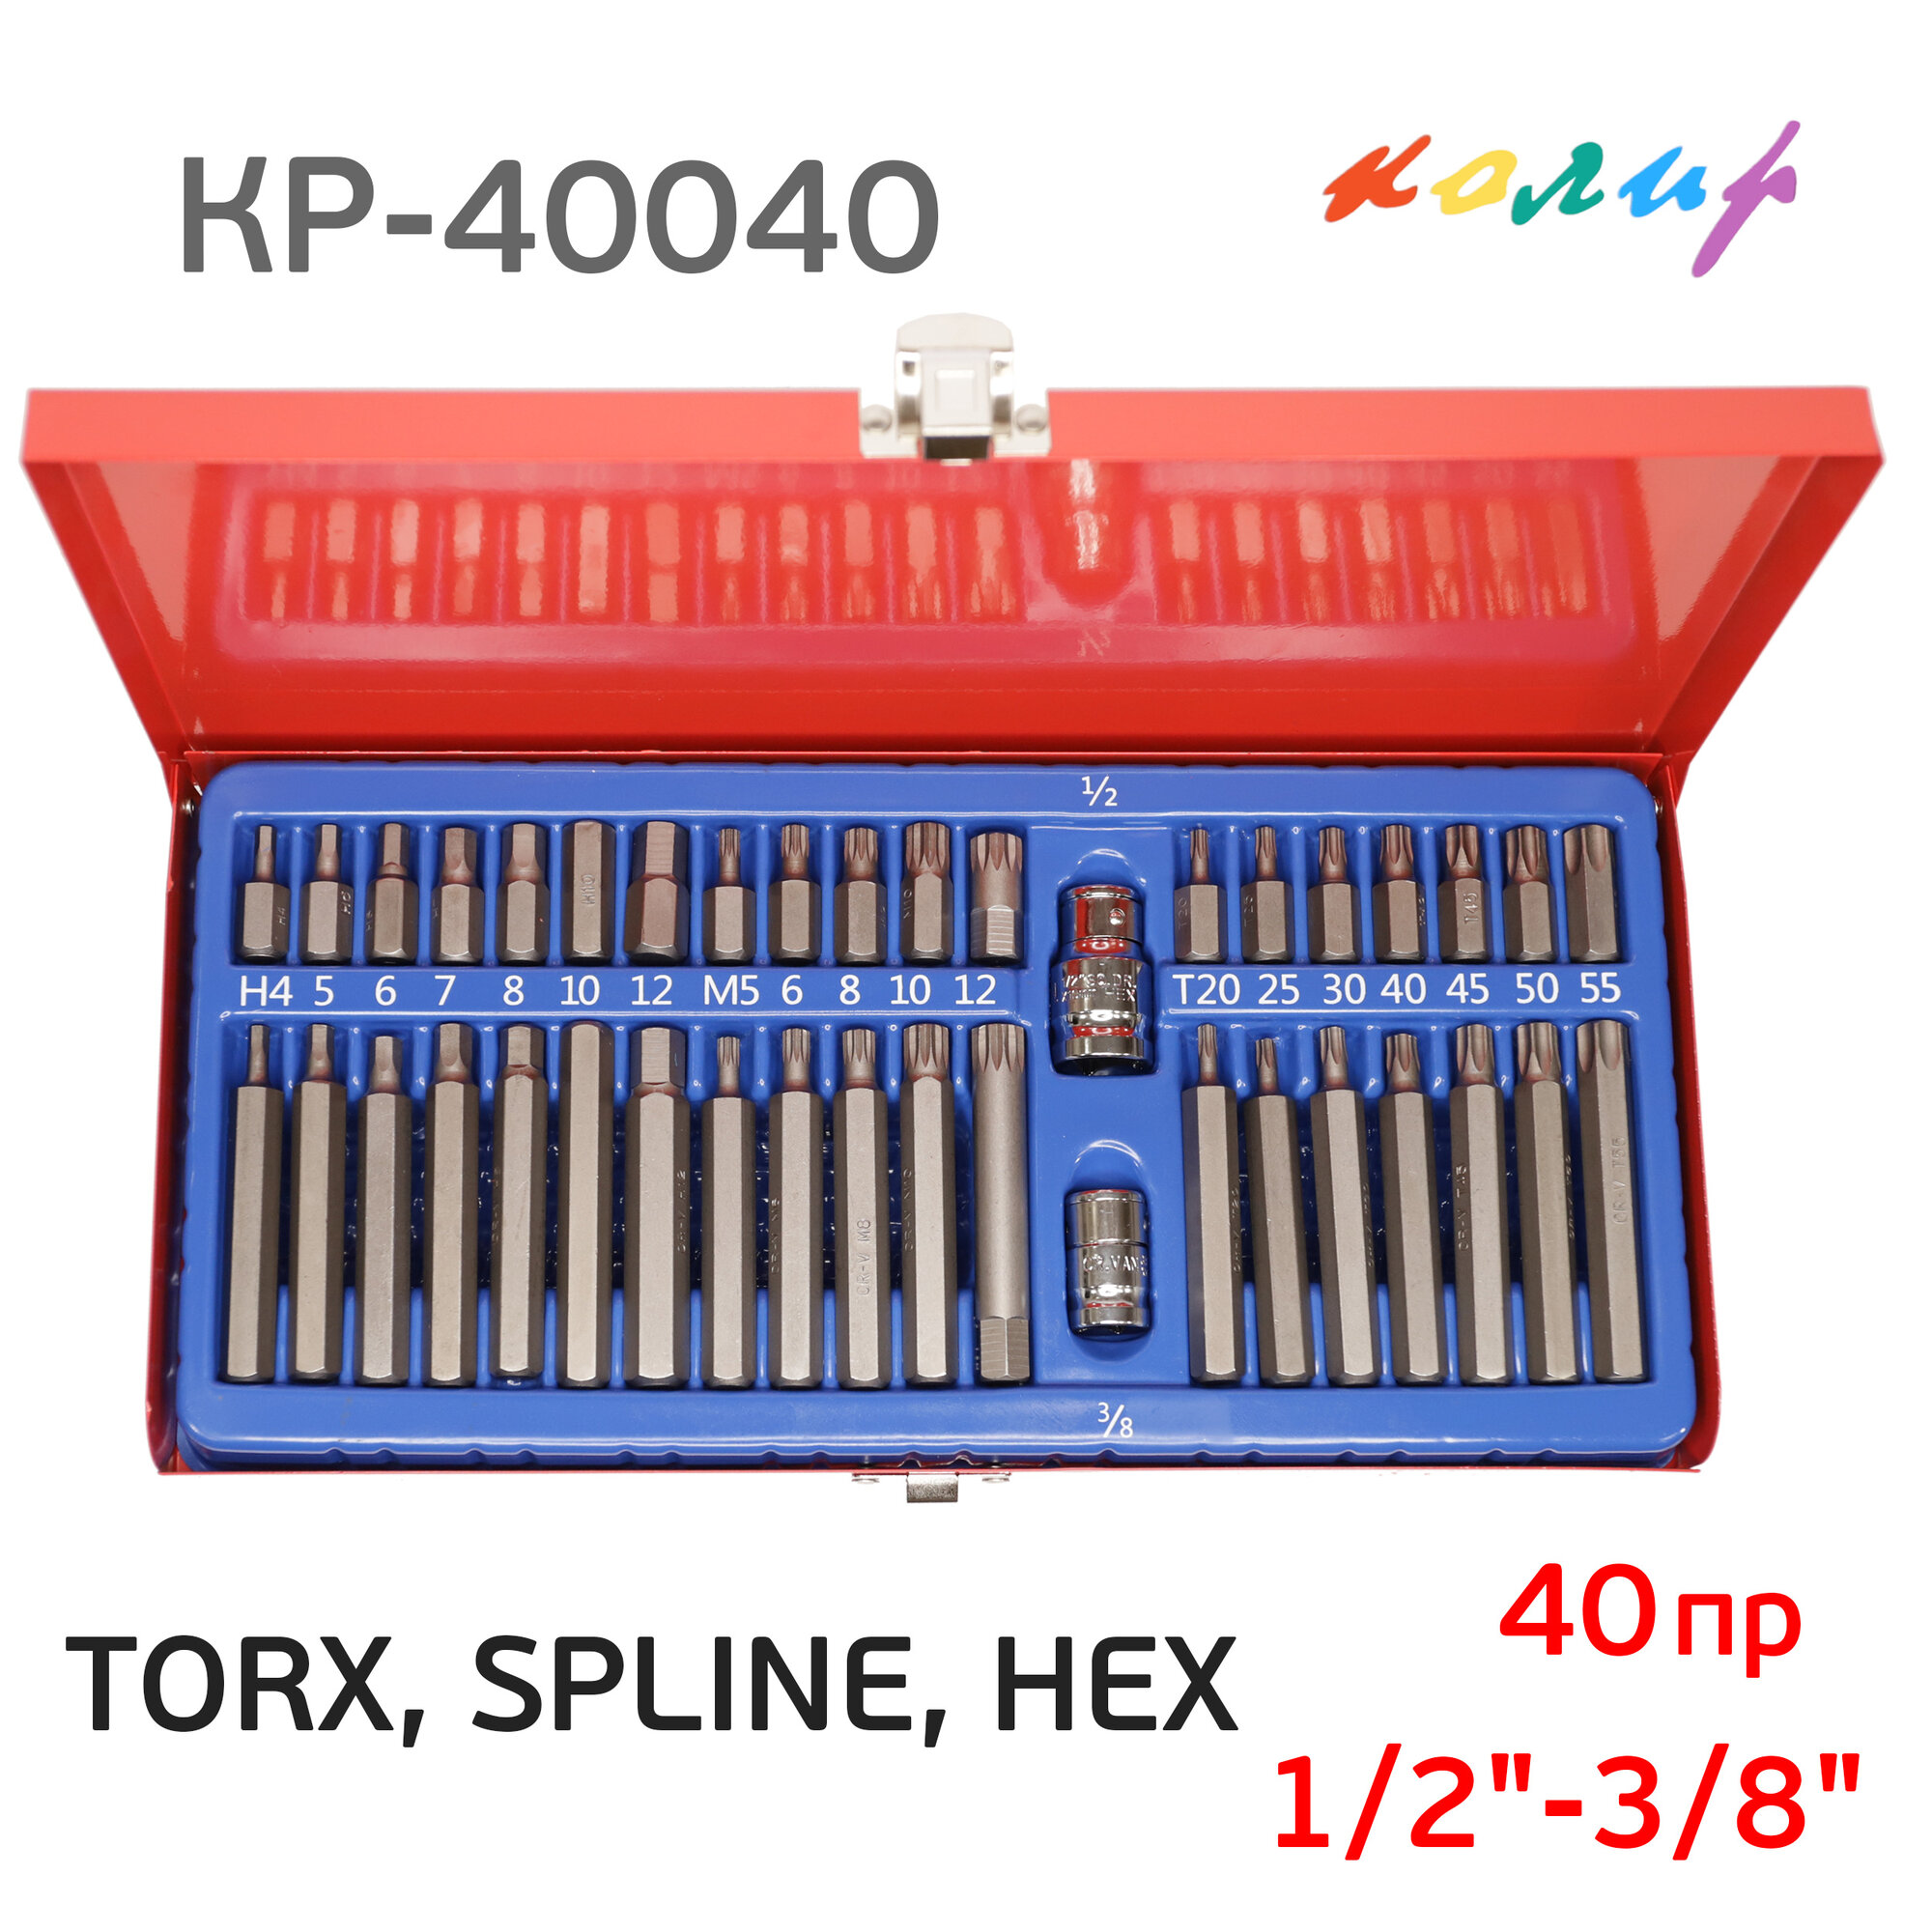 Набор бит 1/2"-3/8" TORX, SPLINE, HEX (40пр.) Колир КР-40040 шестигранники, торсы, сплайны, мет. кейс